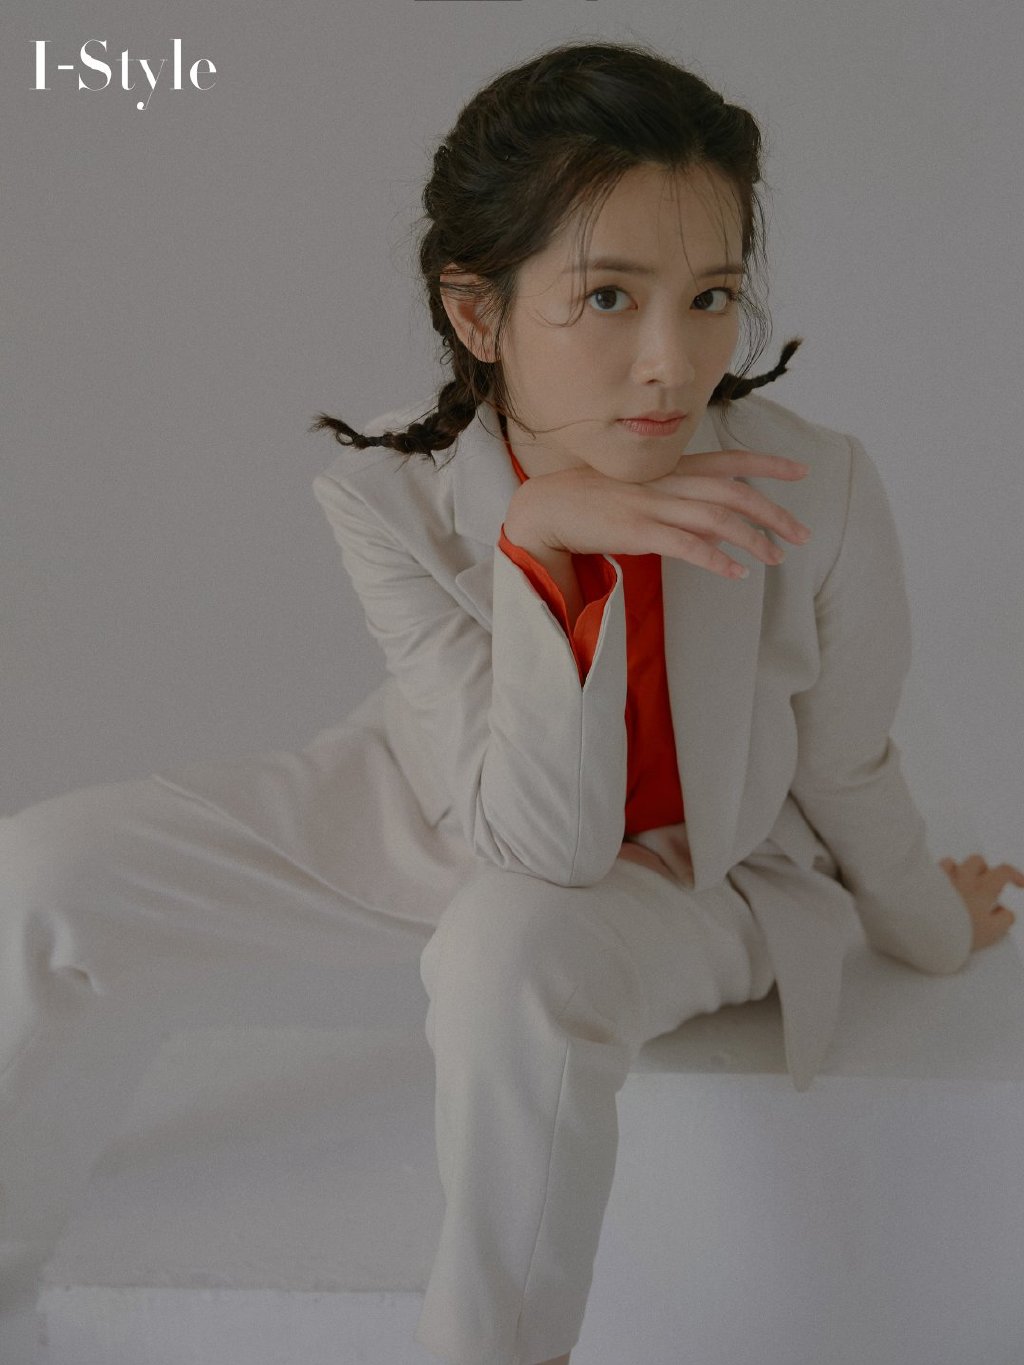 陈昊宇酷美时尚白衣西服套装红衬衫搭配个性杂志写真大片图片